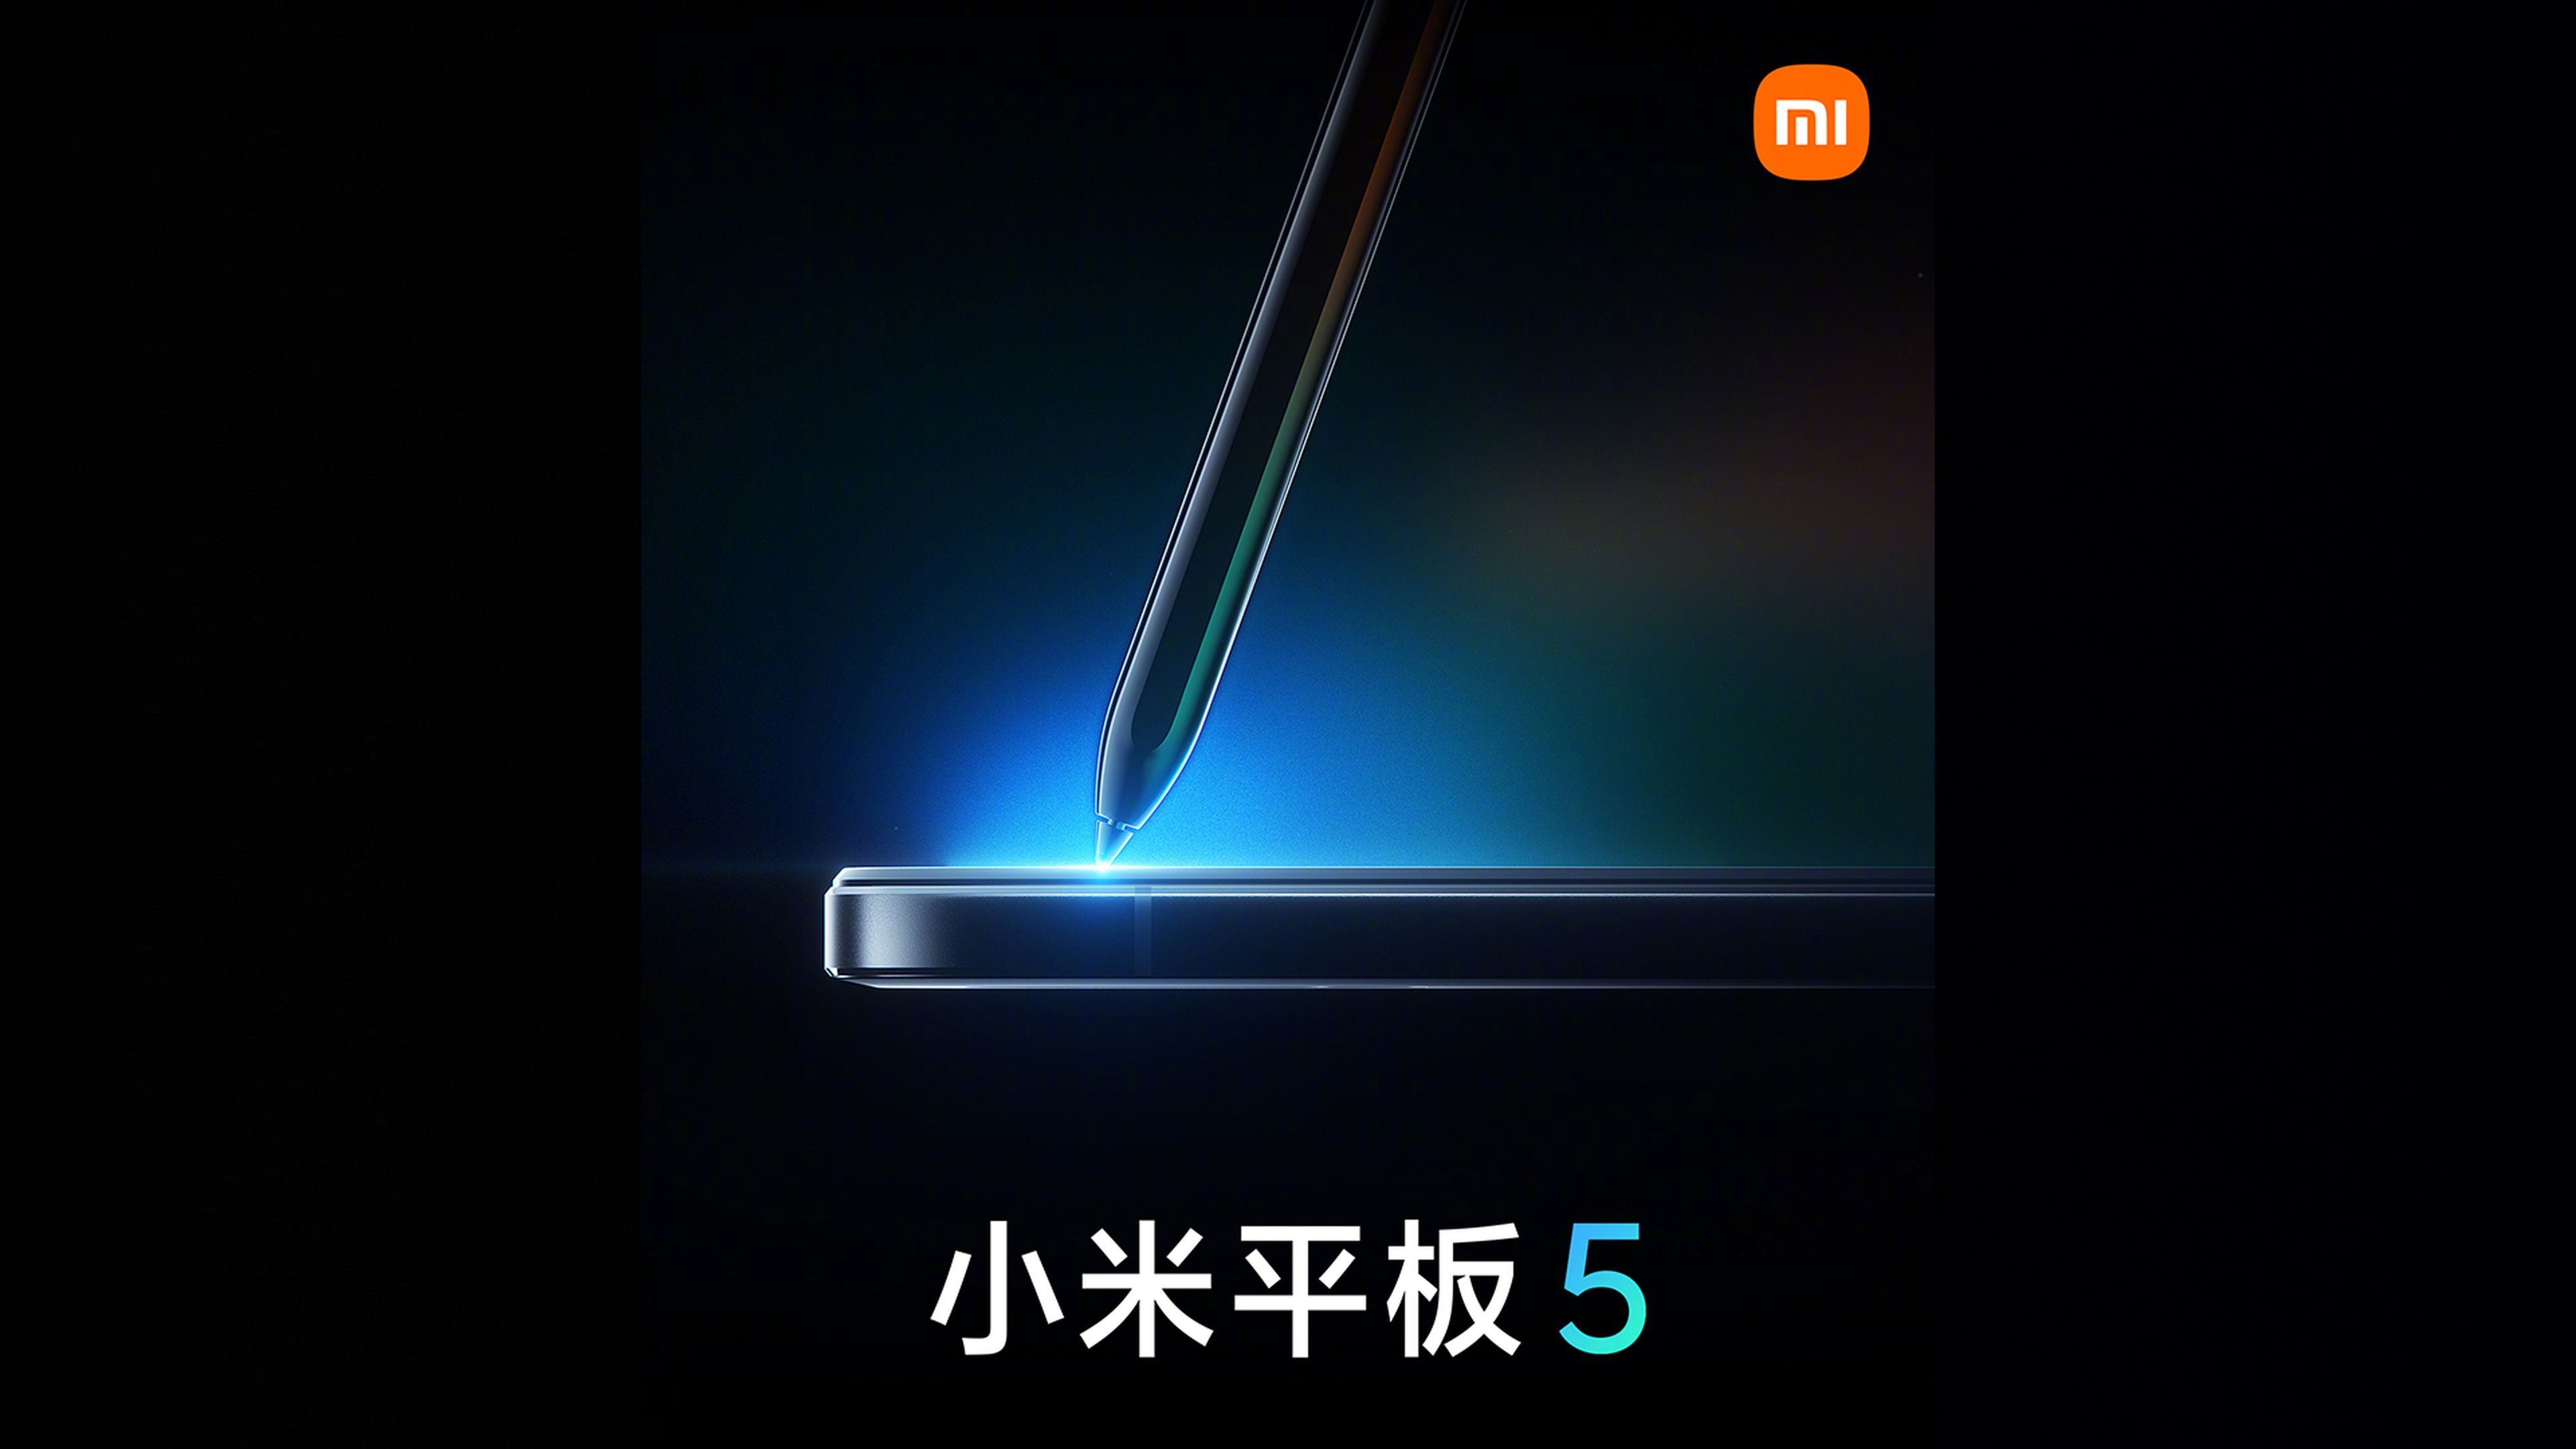 La Xiaomi Mi Pad 5 ya tiene fecha de lanzamiento y se rumorea que llegará con dos accesorios al nivel del iPad